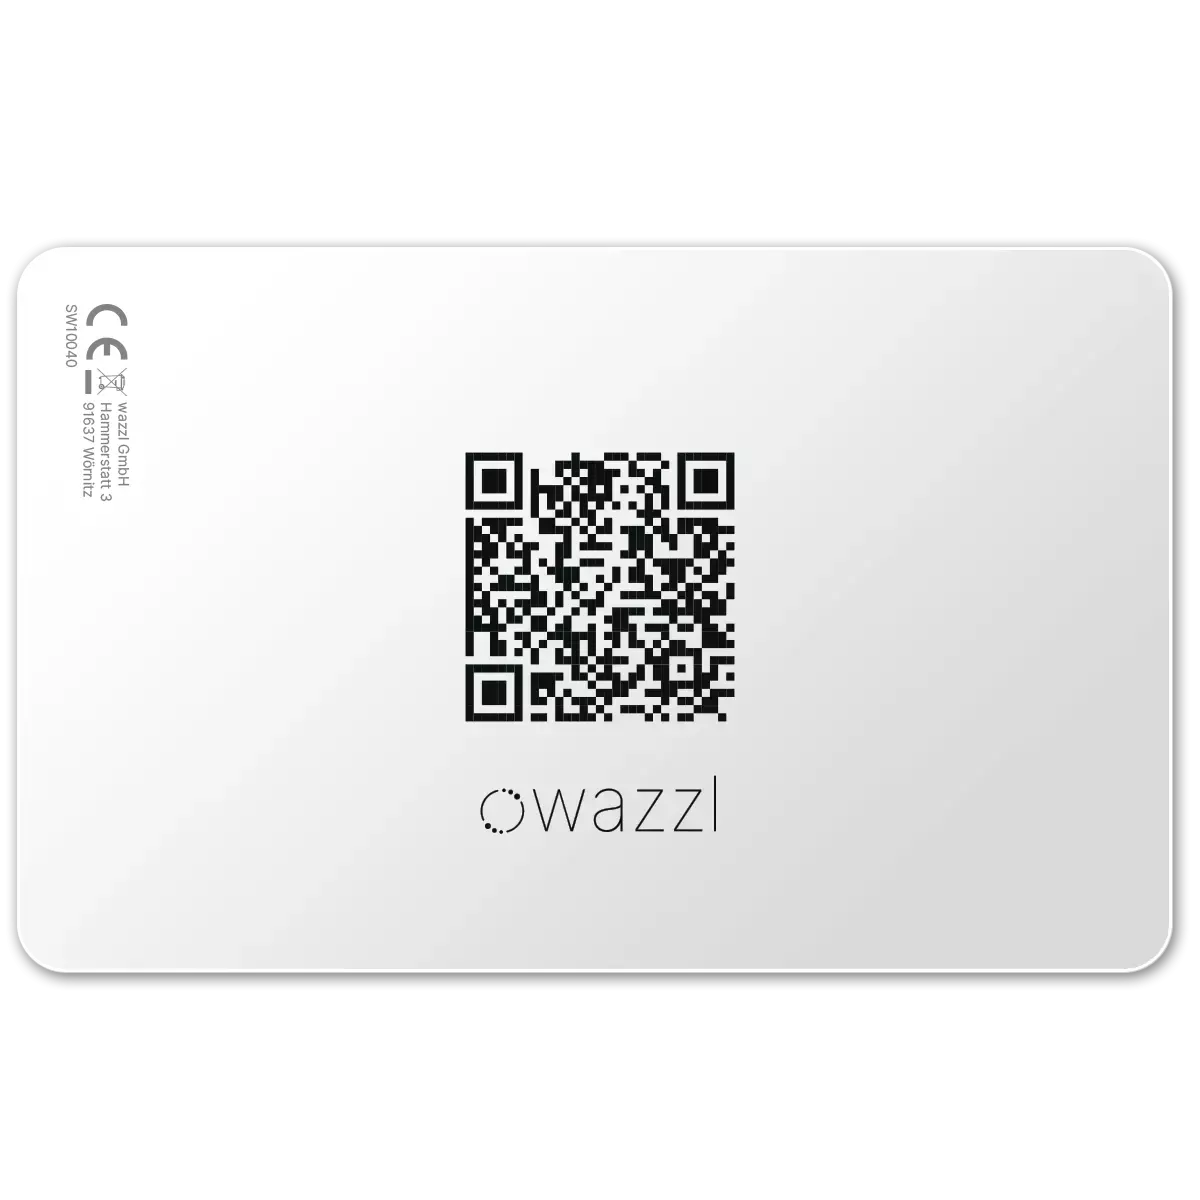 Tarjeta inteligente negra - Tarjeta de visita digital con código QR (perfil)